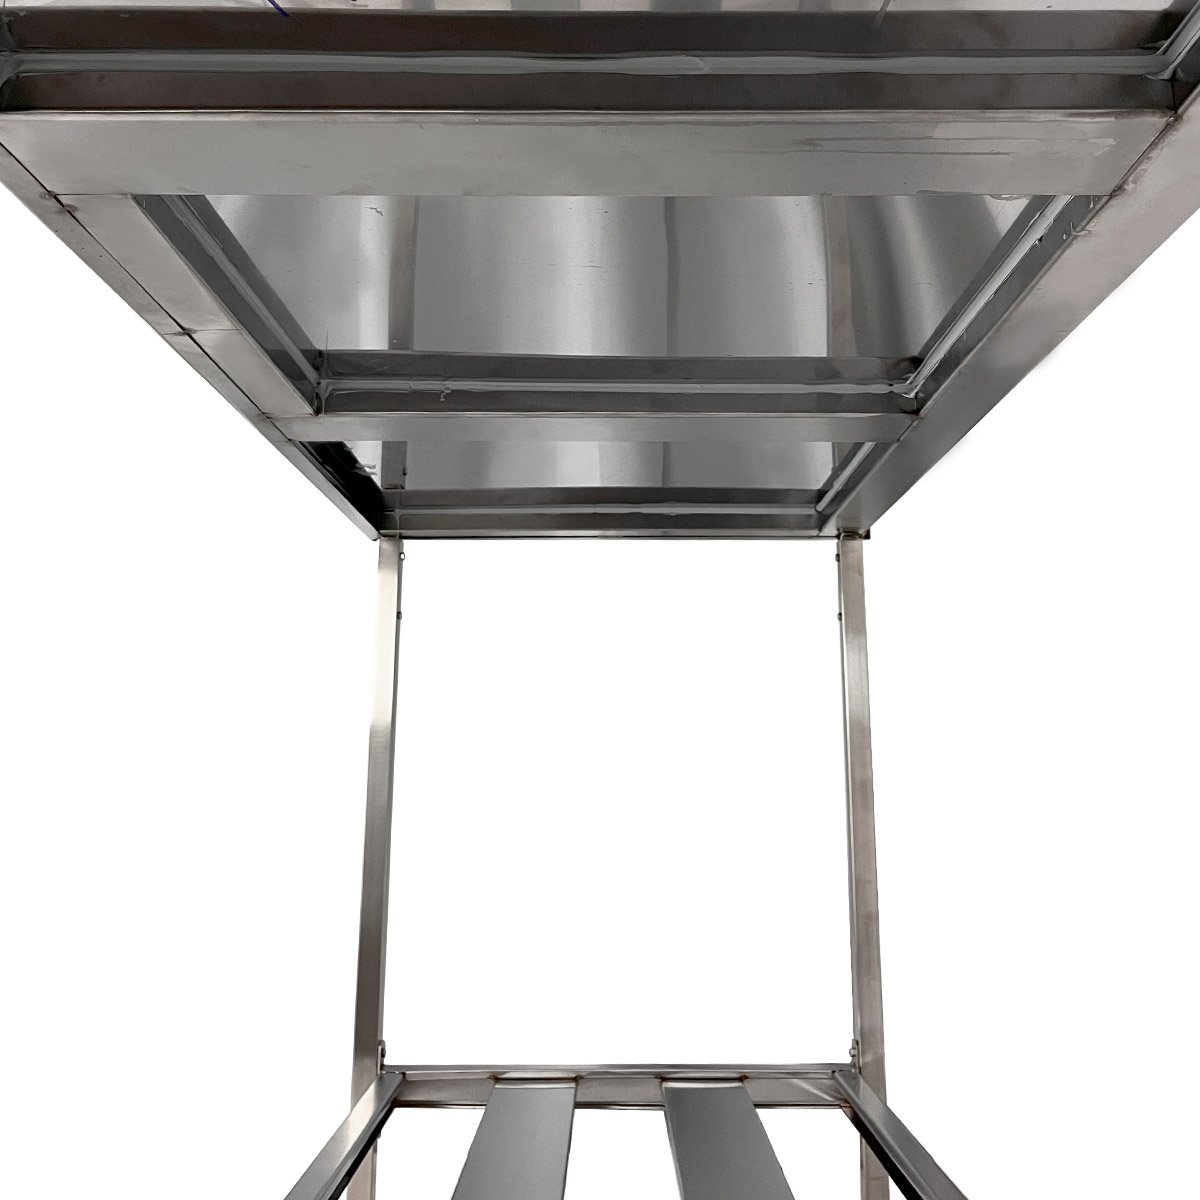 Mesa Aço Inox Profissional 180x70x90 Cm com Espelho Loja da Cozinha Profissional com Espelho - 5